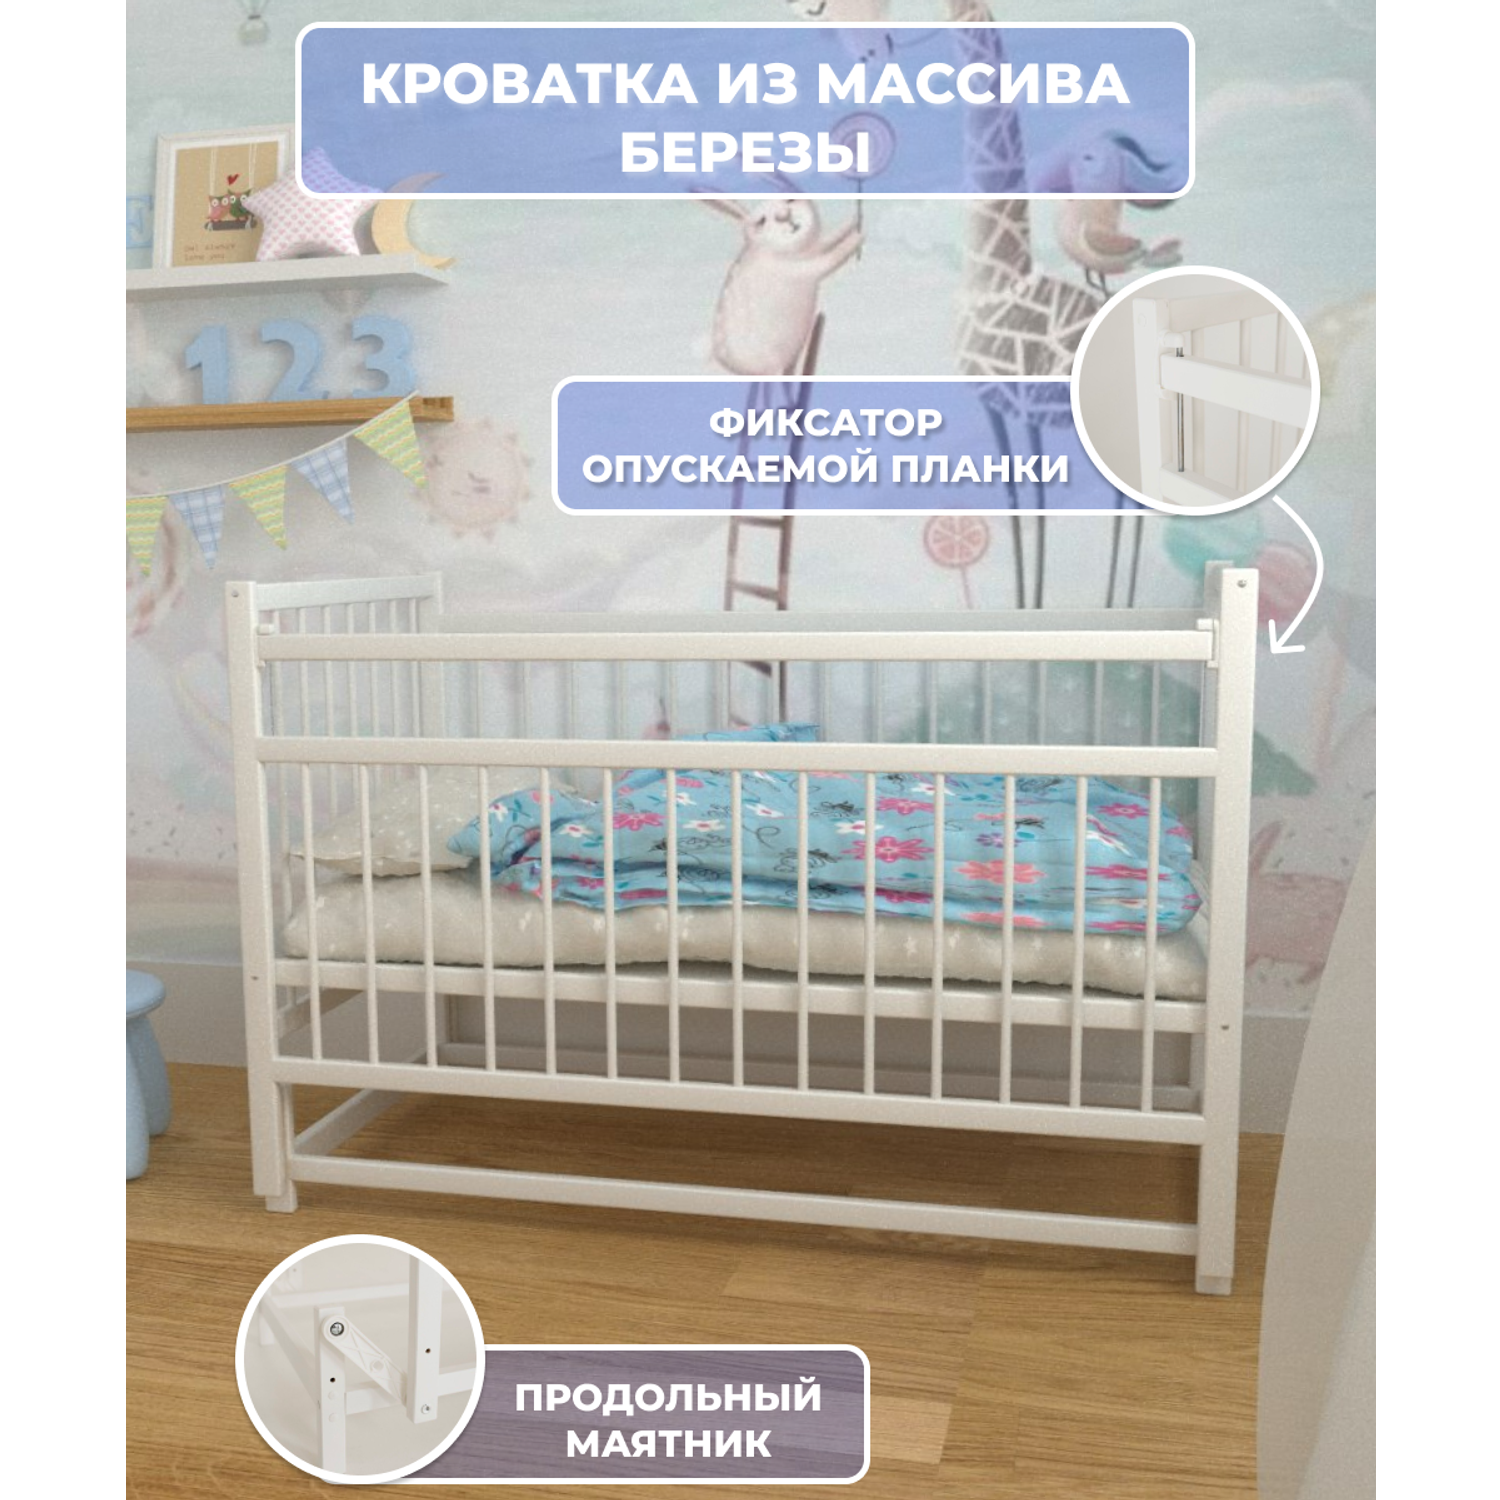 Детская кроватка Moms charm NovBelsmayatnikom, продольный маятник (белый) - фото 1